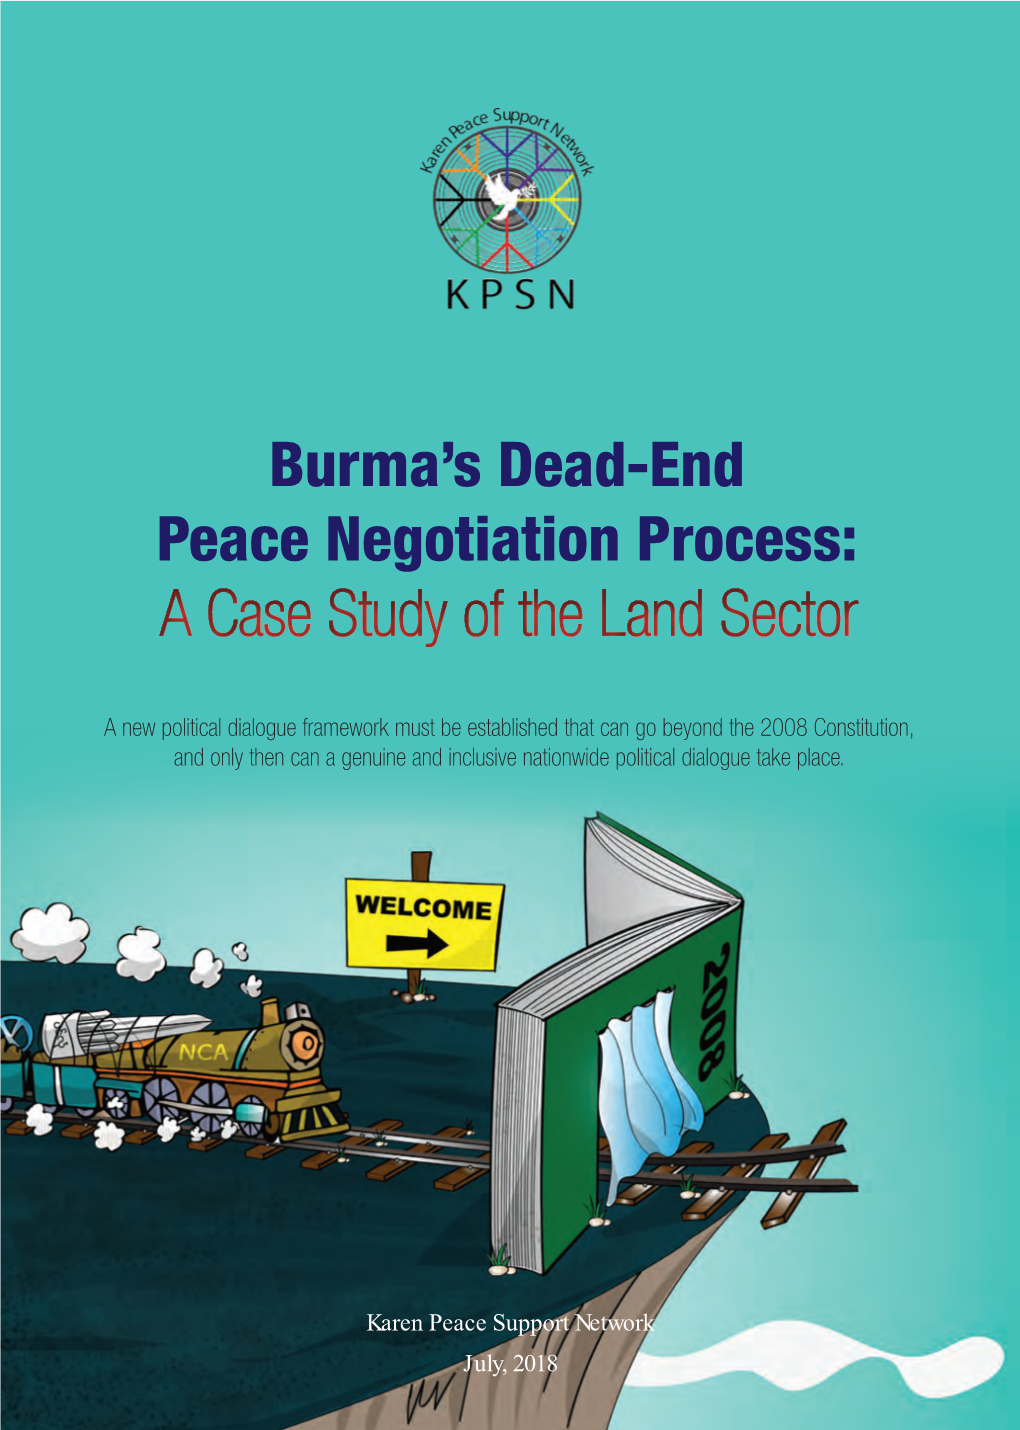 Karen Peace Support Network's Burma's Dead